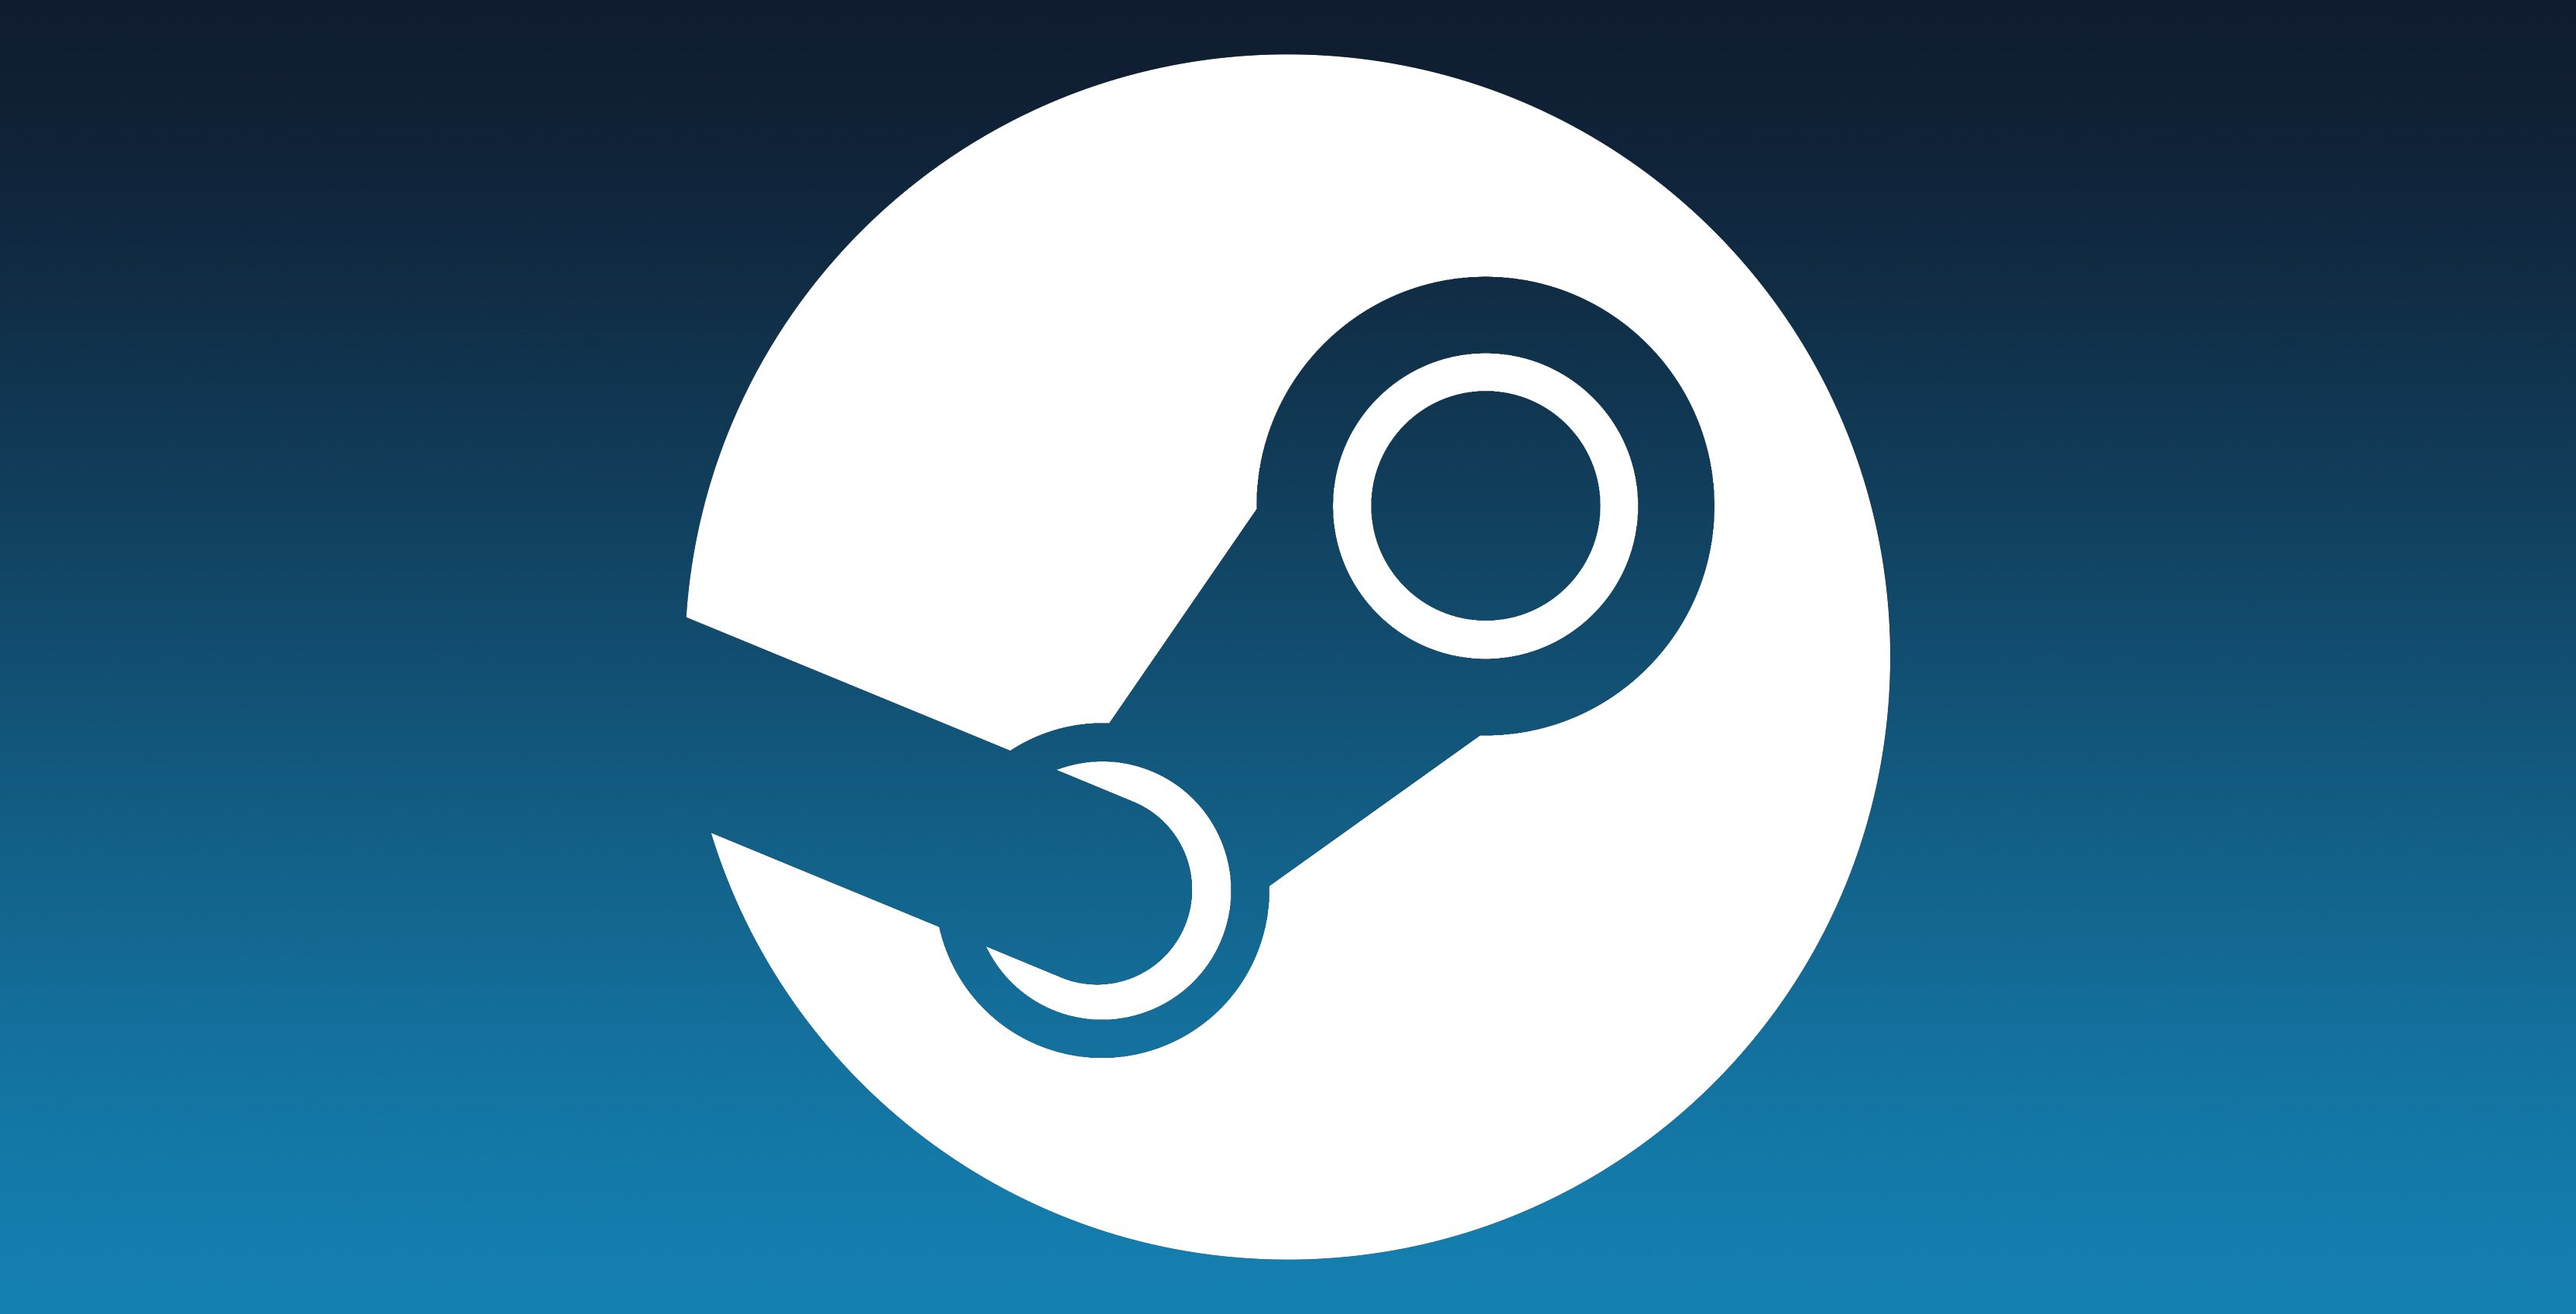 Novidade do Steam libera modo online em qualquer jogo com multiplayer local  - Olhar Digital